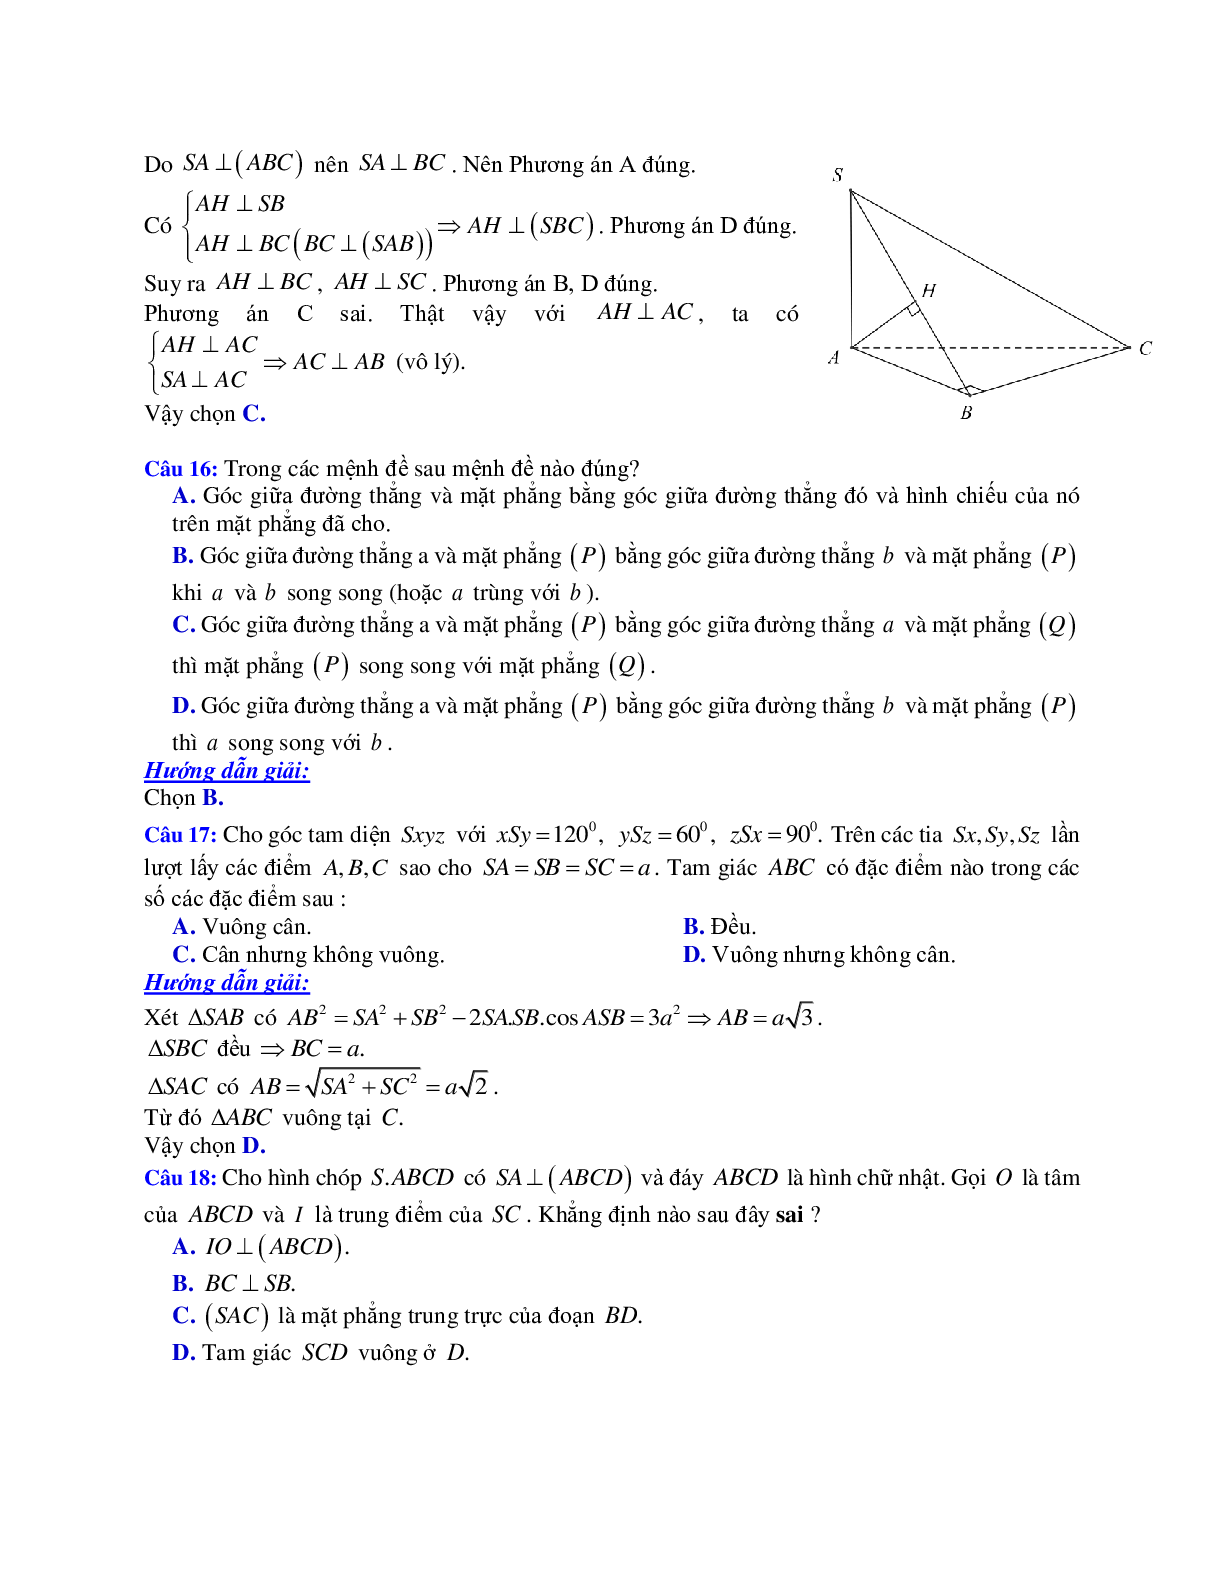 Phương pháp giải và bài tập về Cách tính góc giữa đường thẳng và mặt phẳng (trang 8)